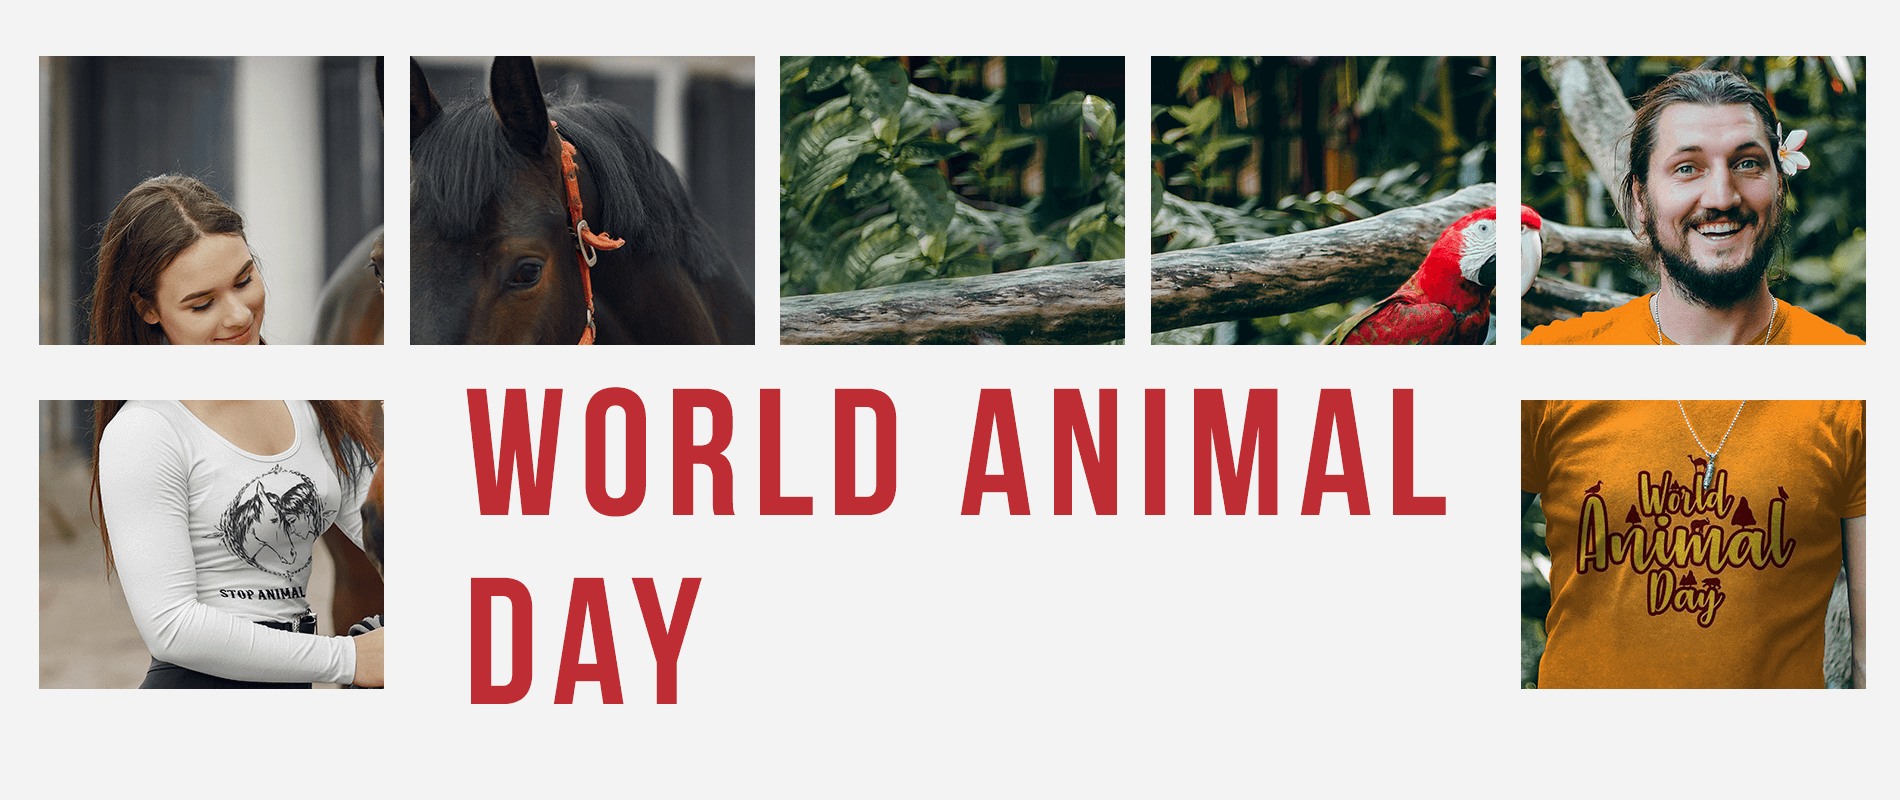 World Animal Day Design Challenge